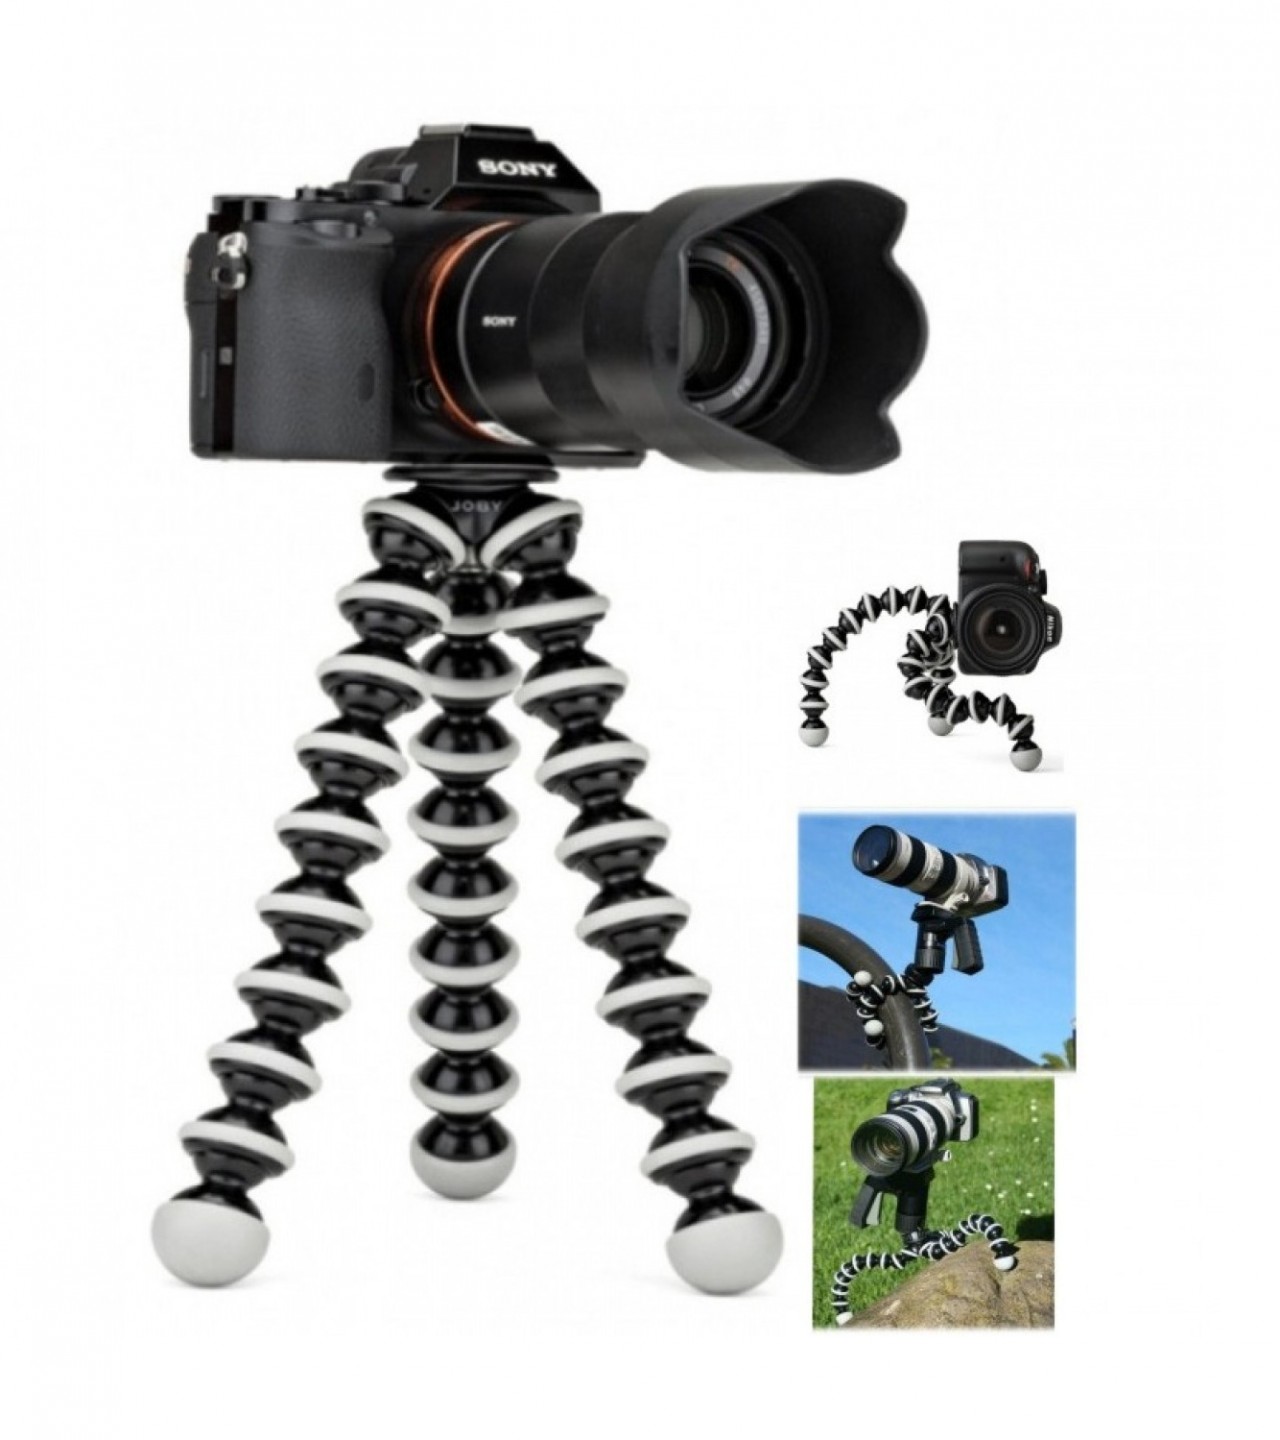 Gorilla Camera And Mobile Tripod Stand 811 - Black